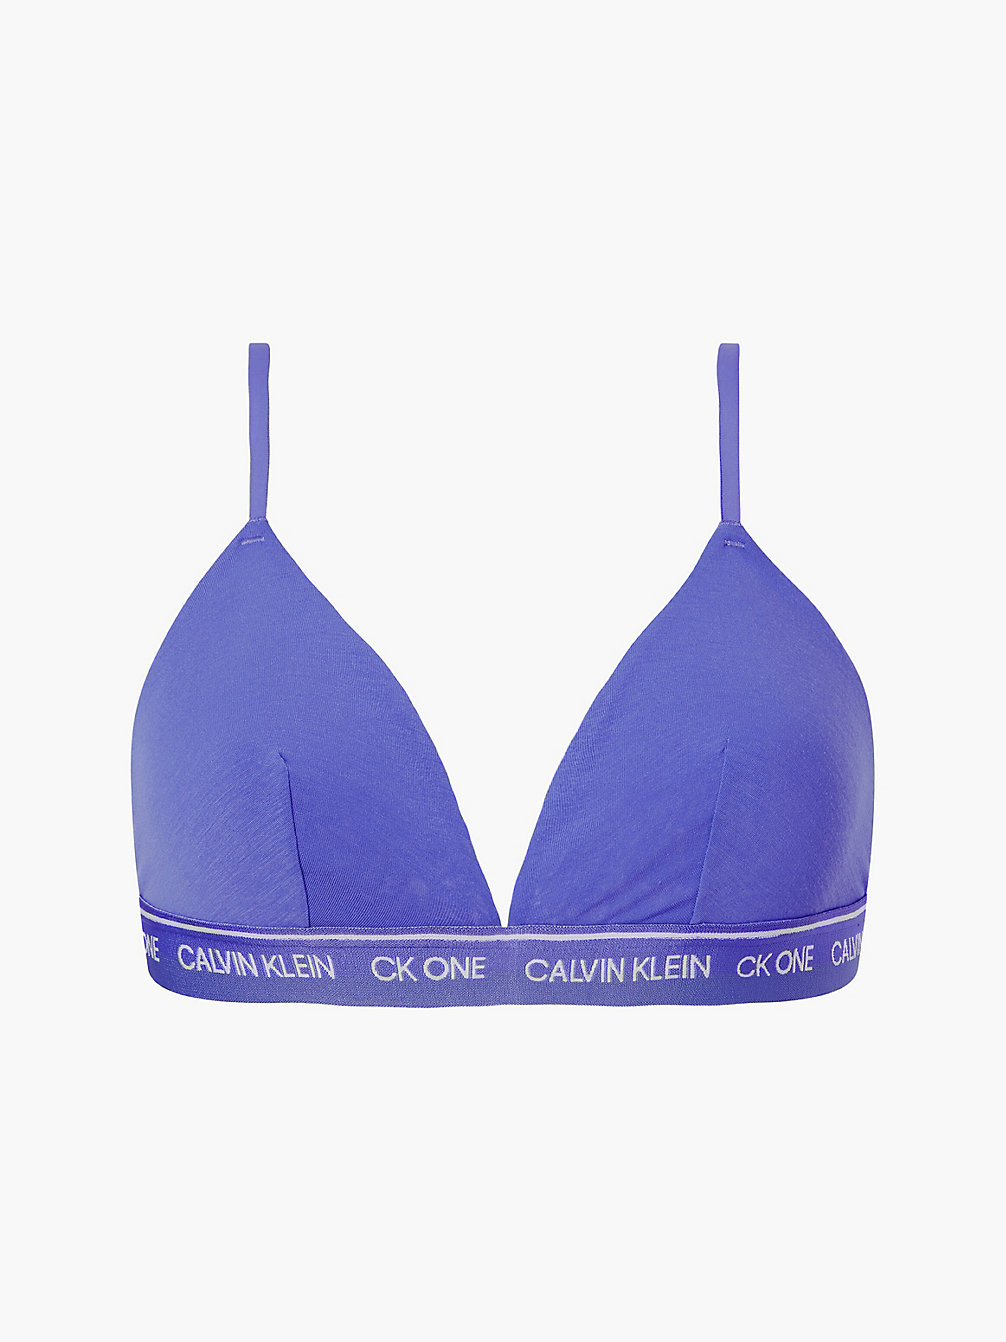 BLUE IRIS > Bralette – CK One Recycled > undefined Damen - Calvin Klein